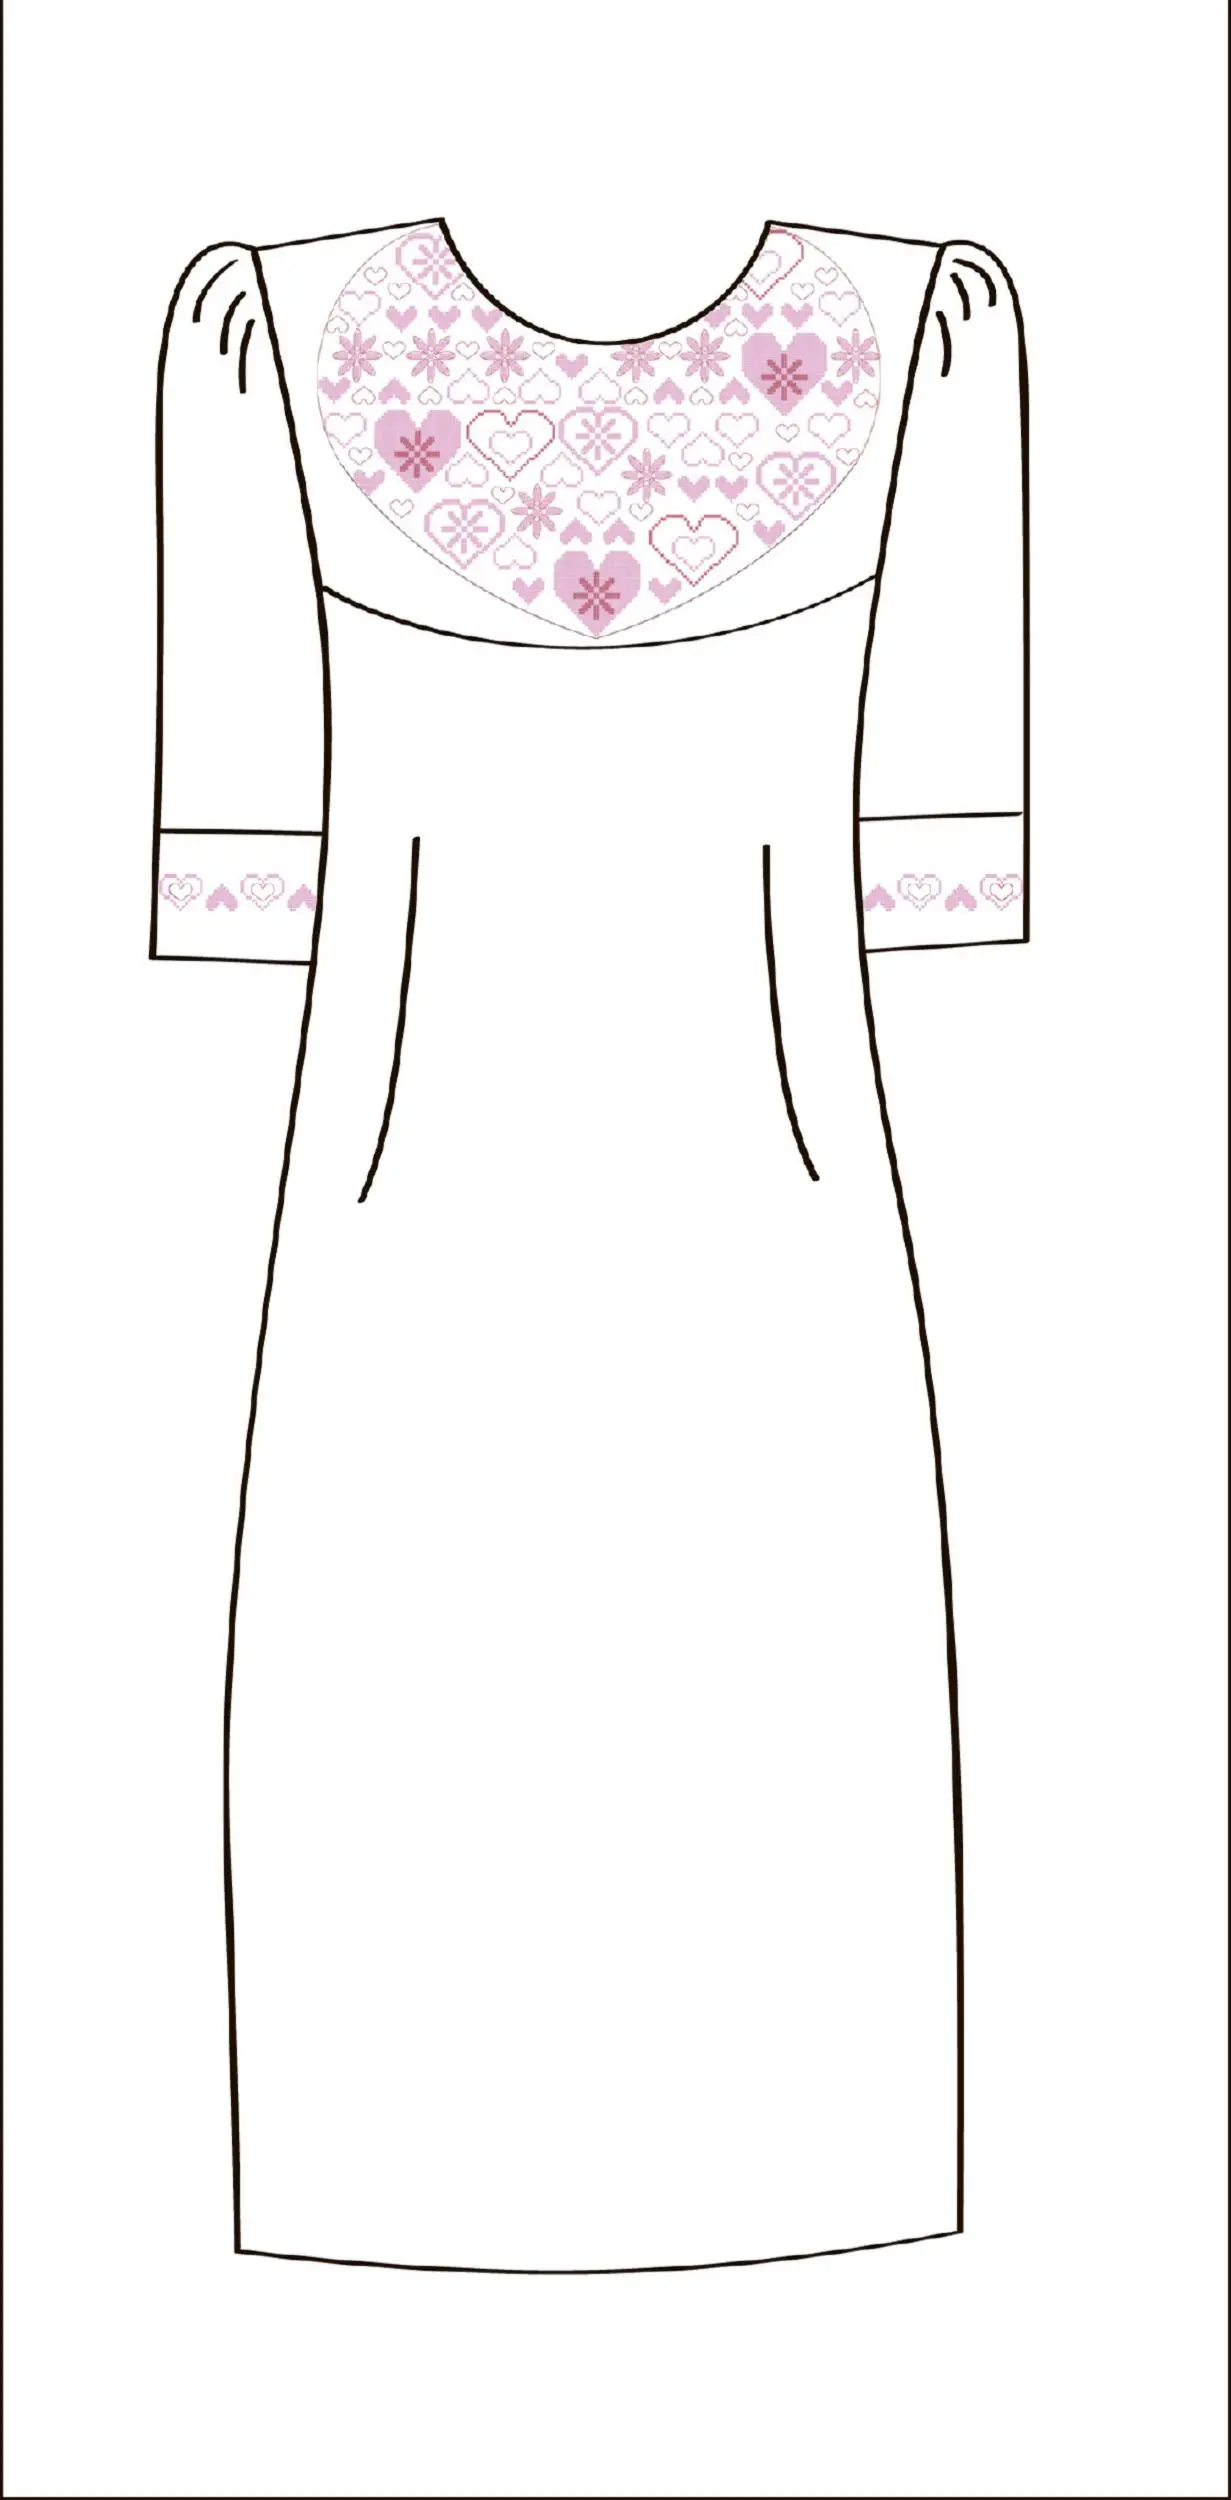 822-14/09 Плаття жіноче, біле, розмір 52